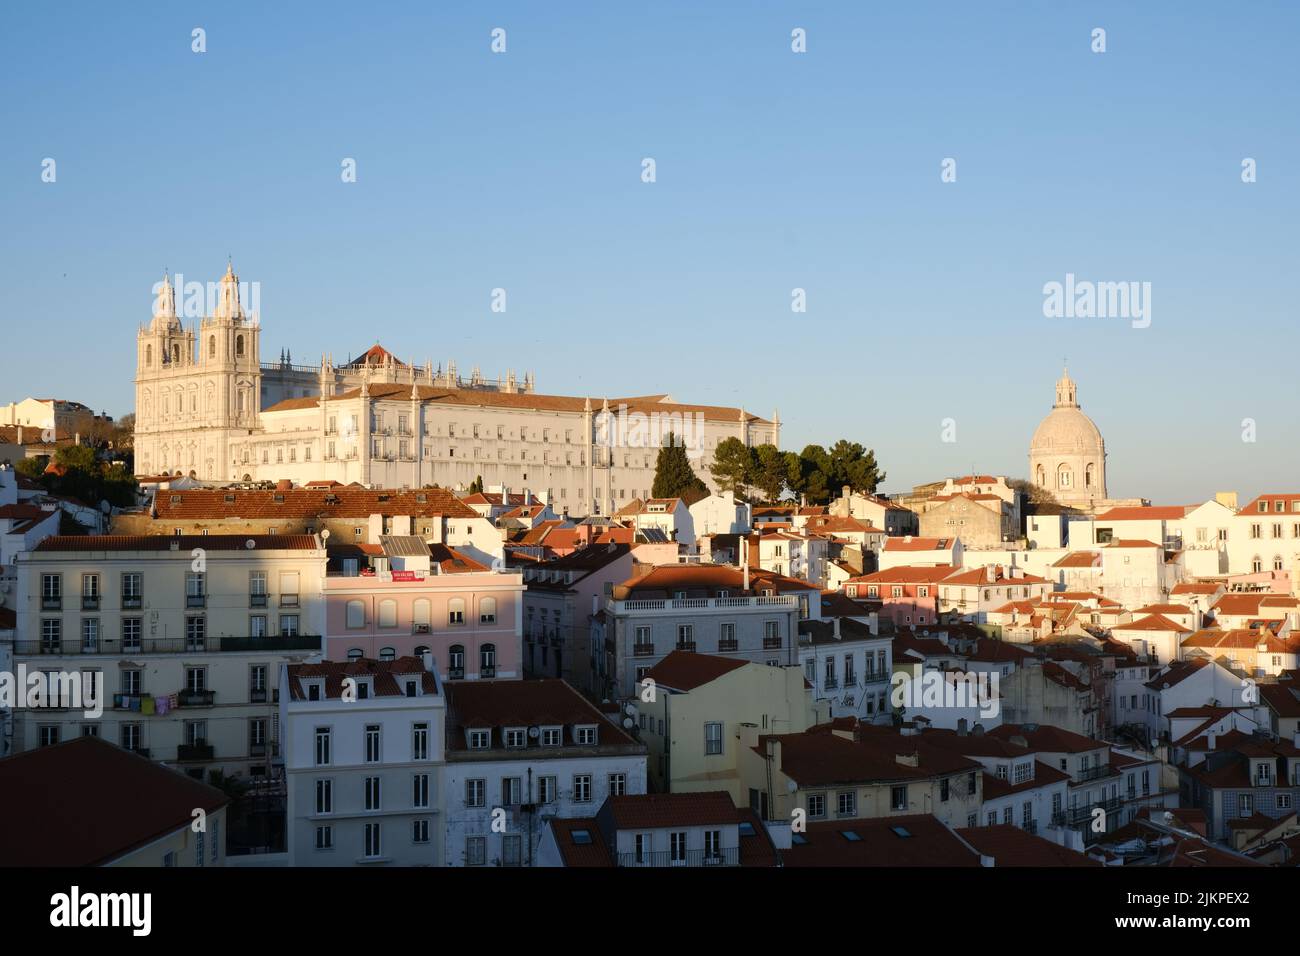 Une belle photo d'un paysage urbain avec des bâtiments similaires au Portugal Banque D'Images